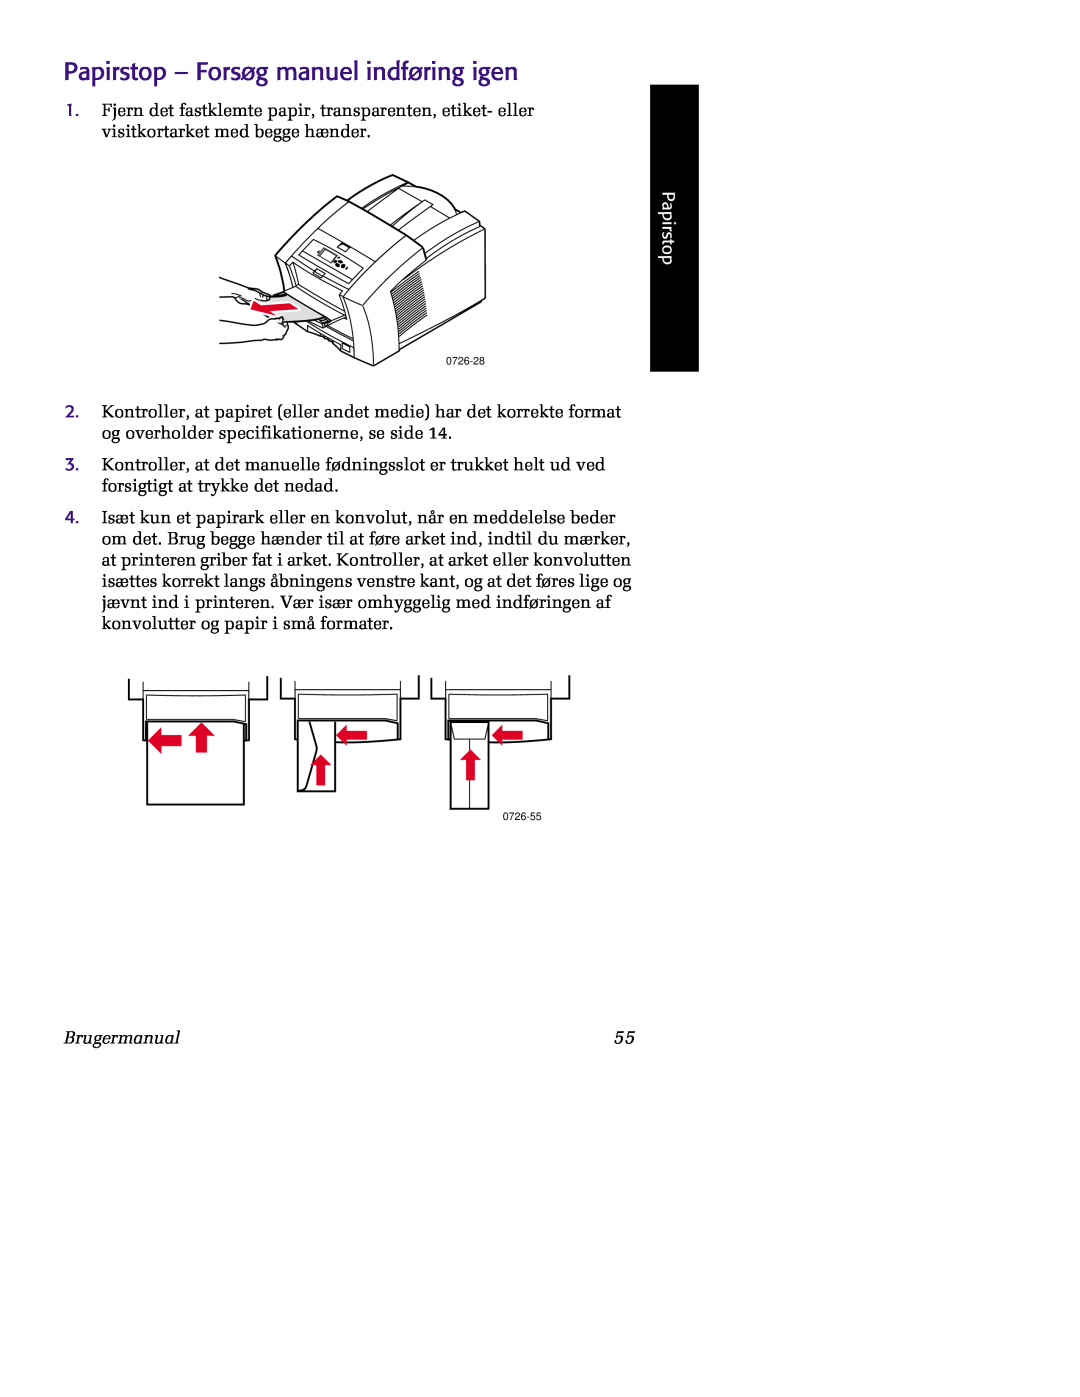 Tektronix 860 Papirstop - Forsøg manuel indføring igen, Brugermanual 